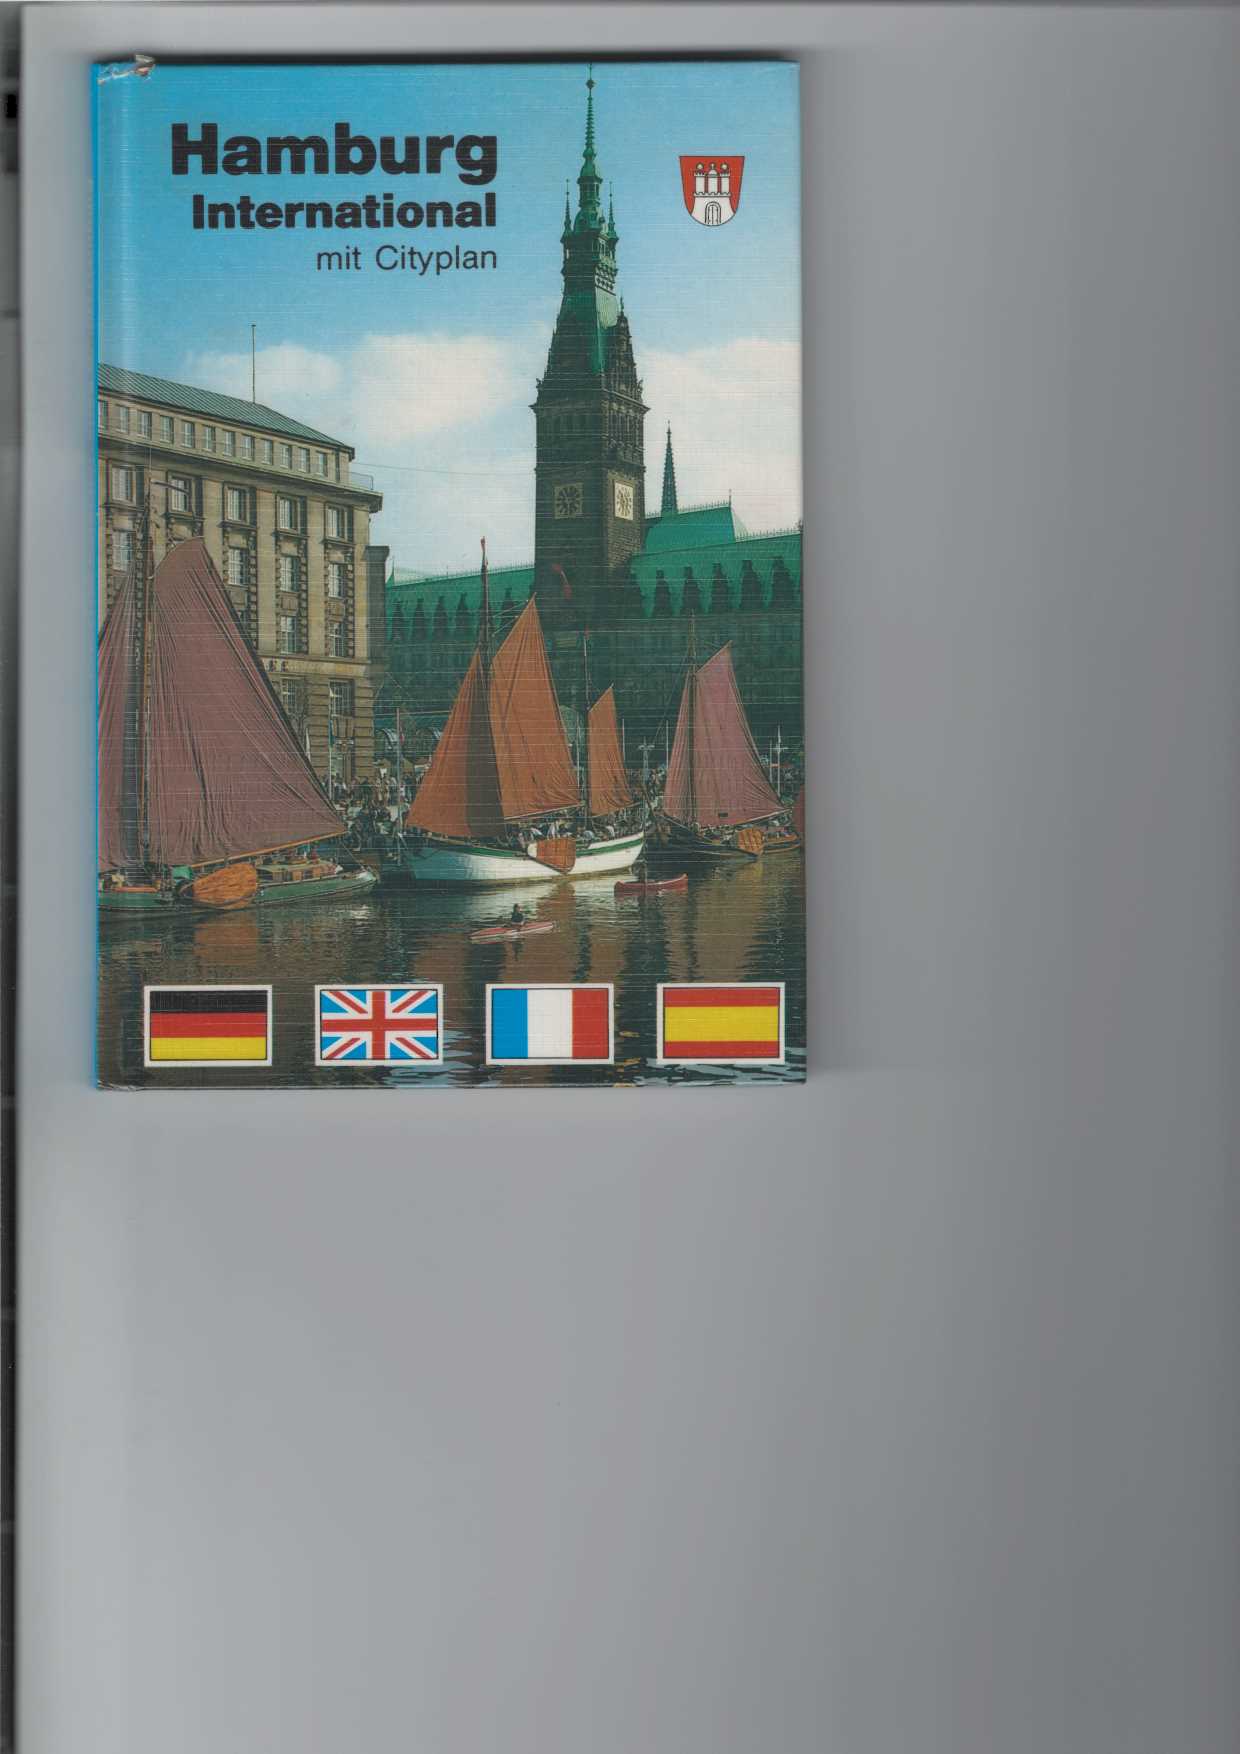   Hamburg International mit Cityplan. 